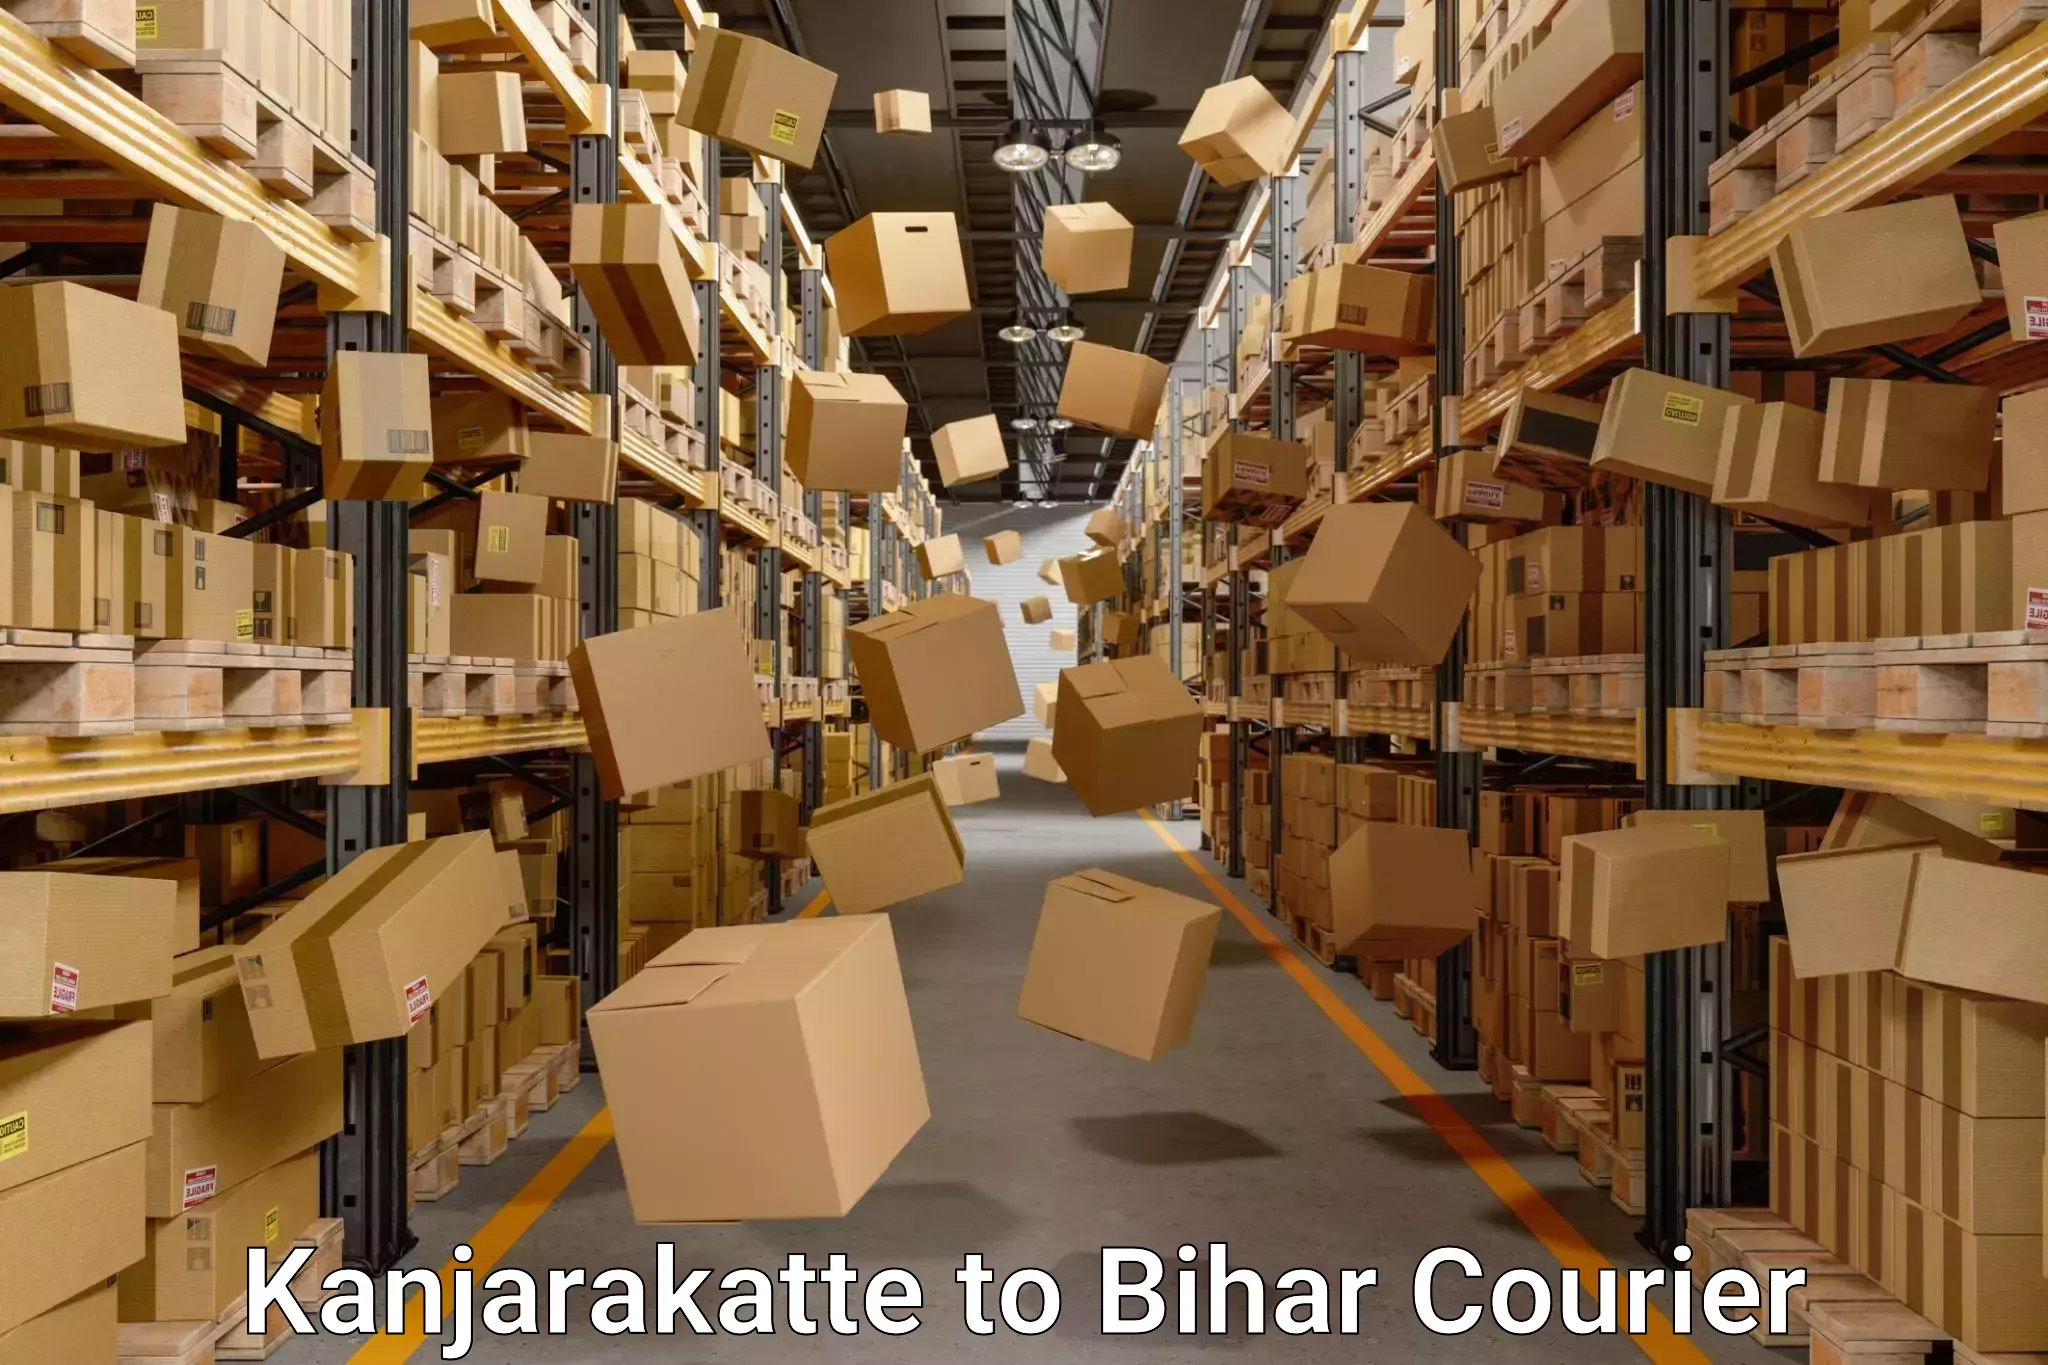 Furniture relocation experts Kanjarakatte to Bihar